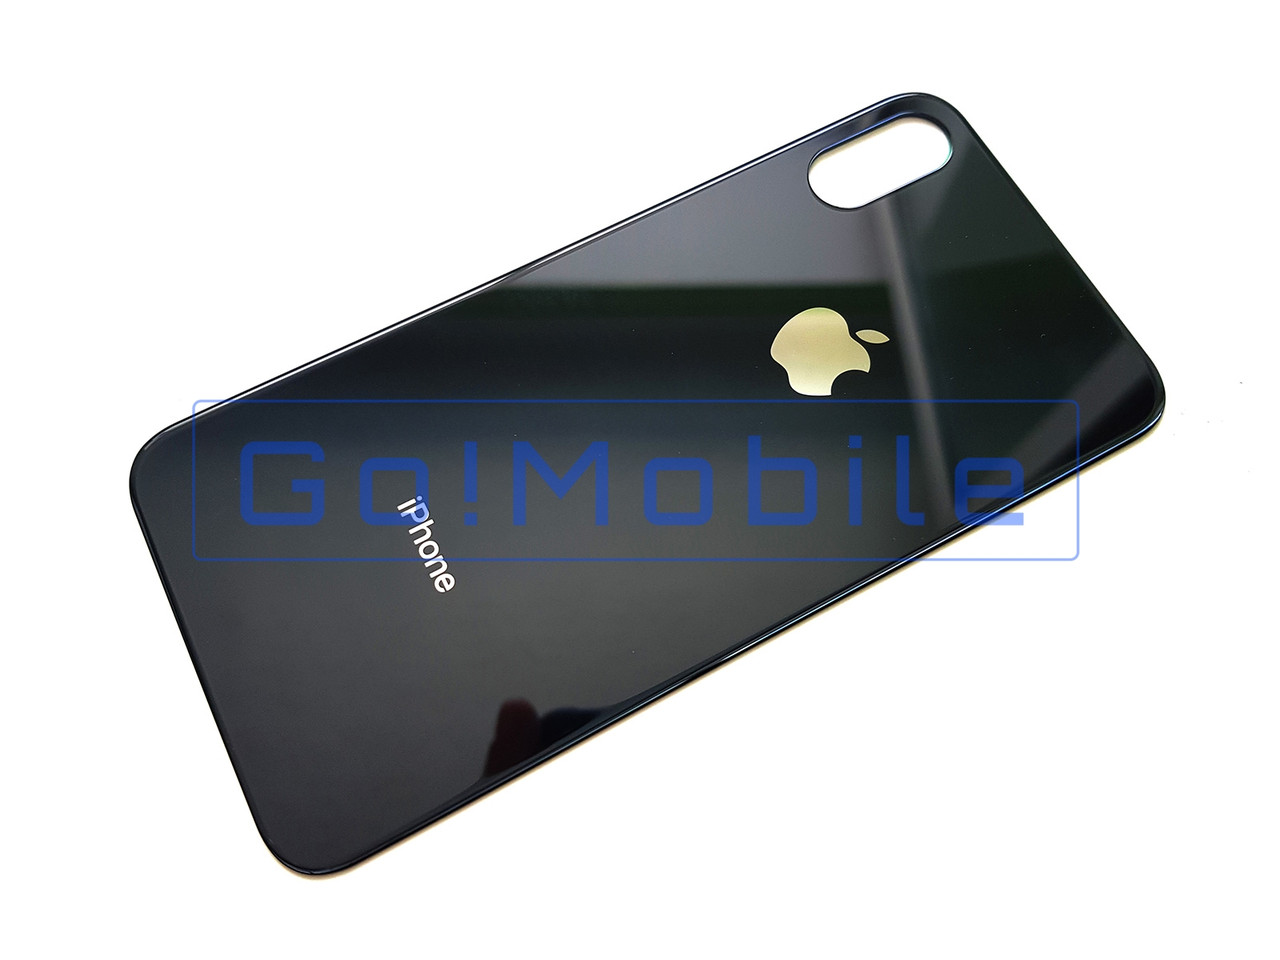 Задня кришка iPhone XS, сіра (чорна) для заміни без розбирання корпусу (великий виріз під скло камери)